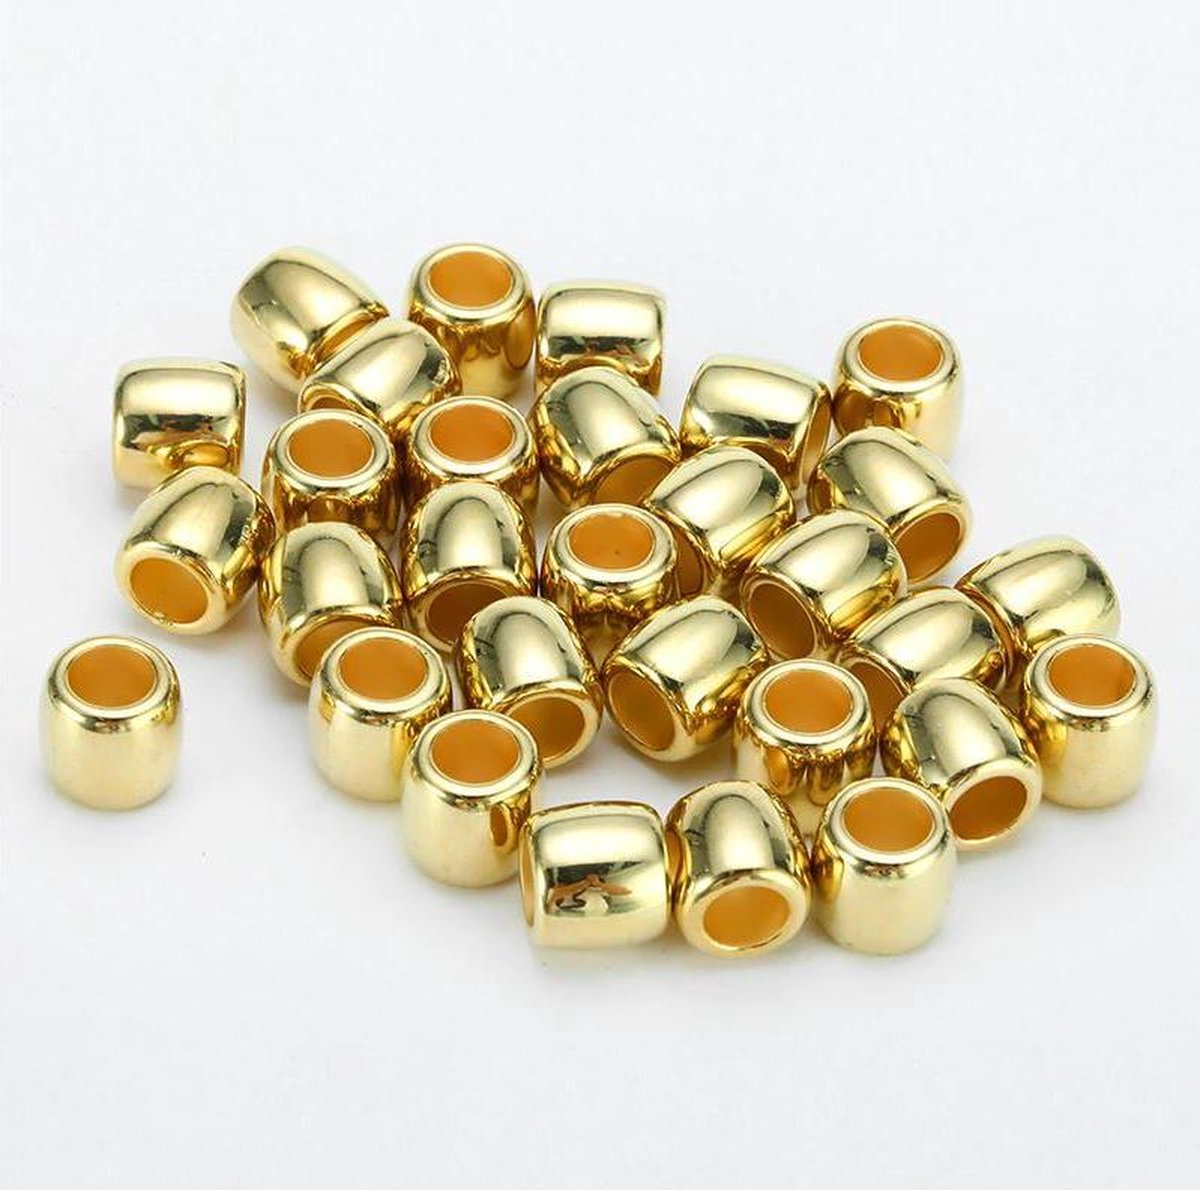 Beads for braids - haar beads - dreadlock kralen - haar kralen - tunnels goud 30 stuks